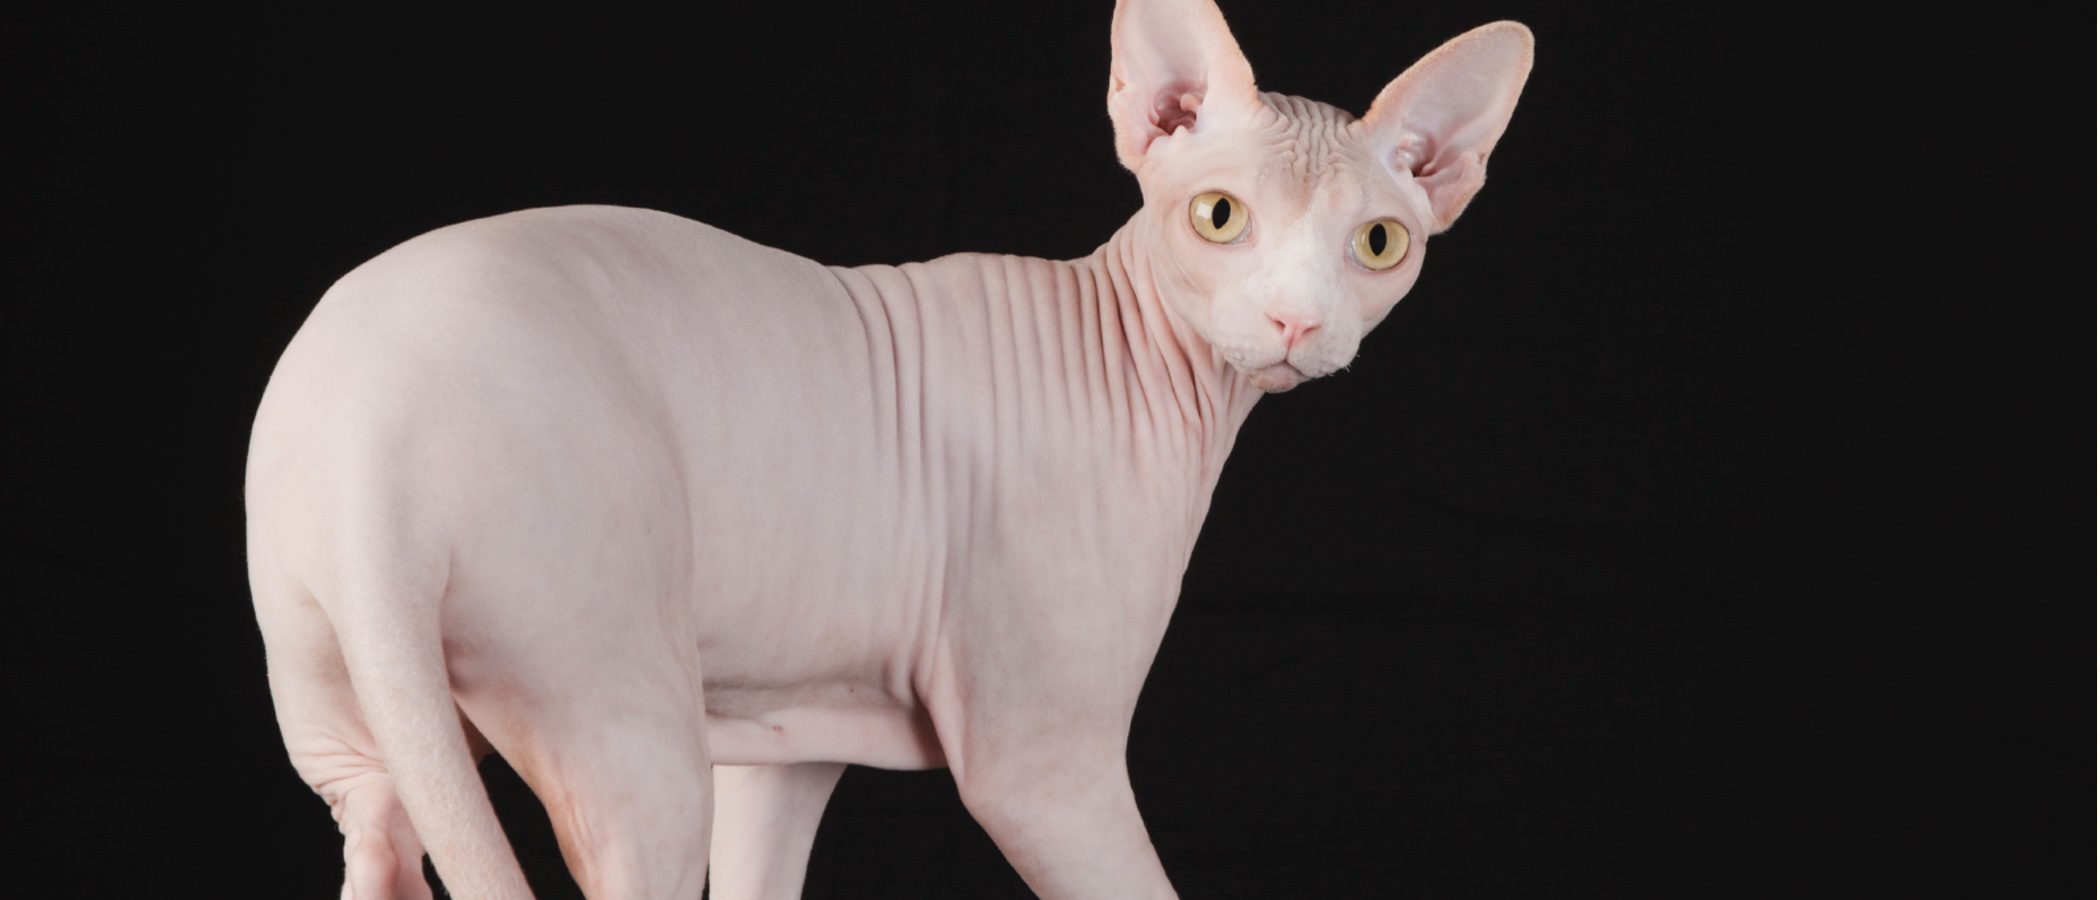 Sphynx o gato egipcio: todo sobre esta raza de felino